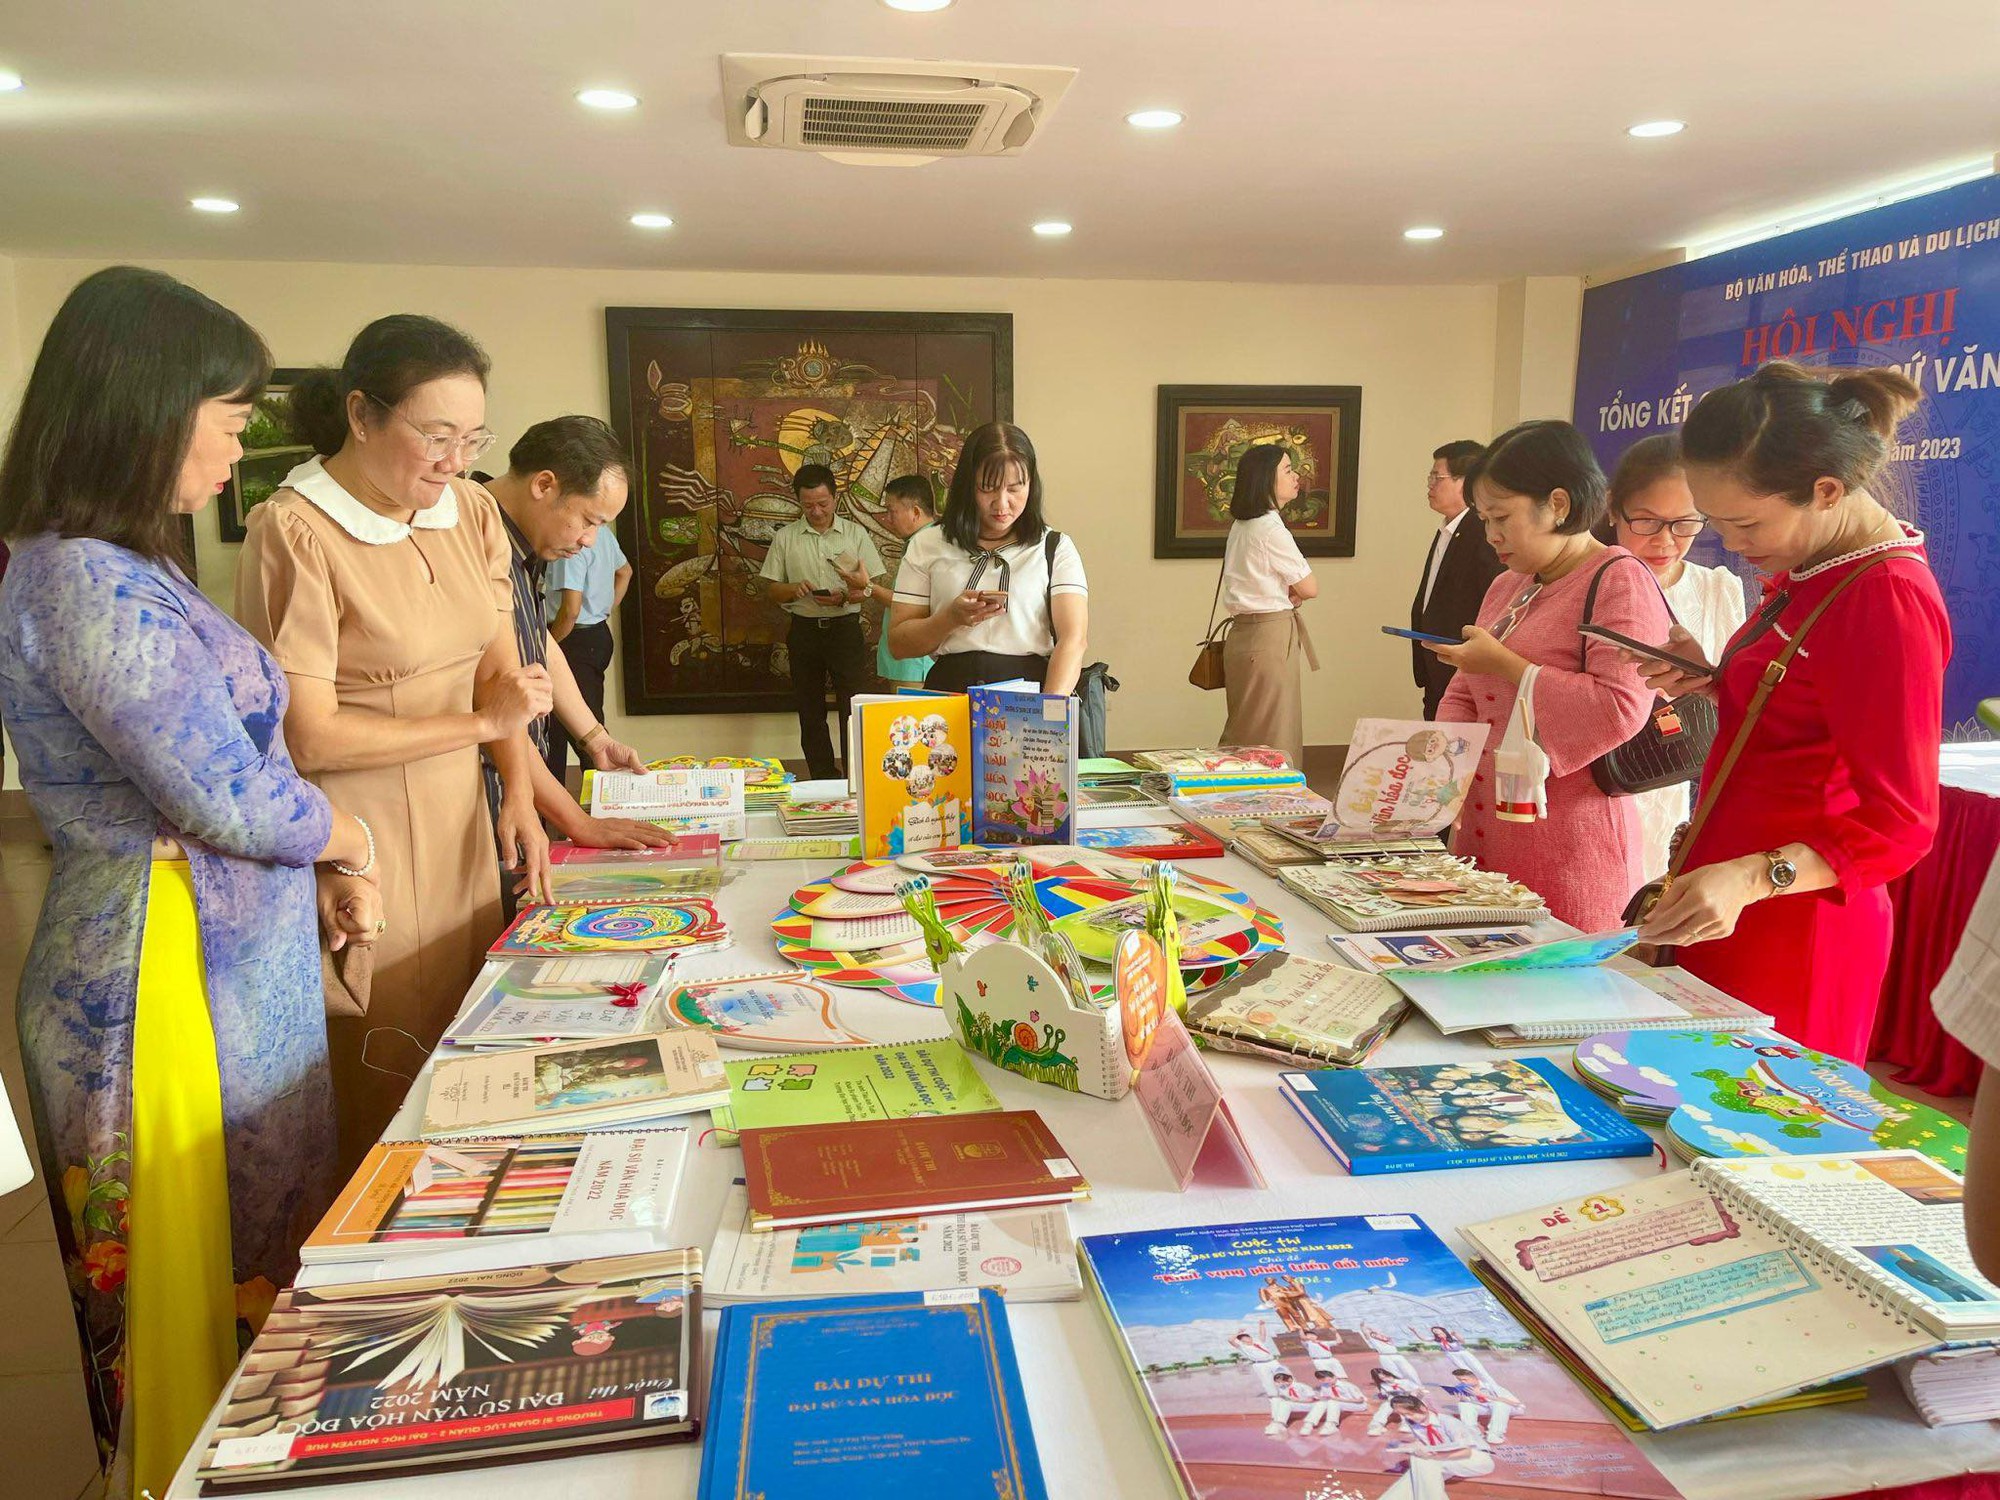 Cuộc thi Đại sứ Văn hóa đọc đã khẳng định những giá trị tốt đẹp của văn hóa đọc trong cộng đồng - Ảnh 2.